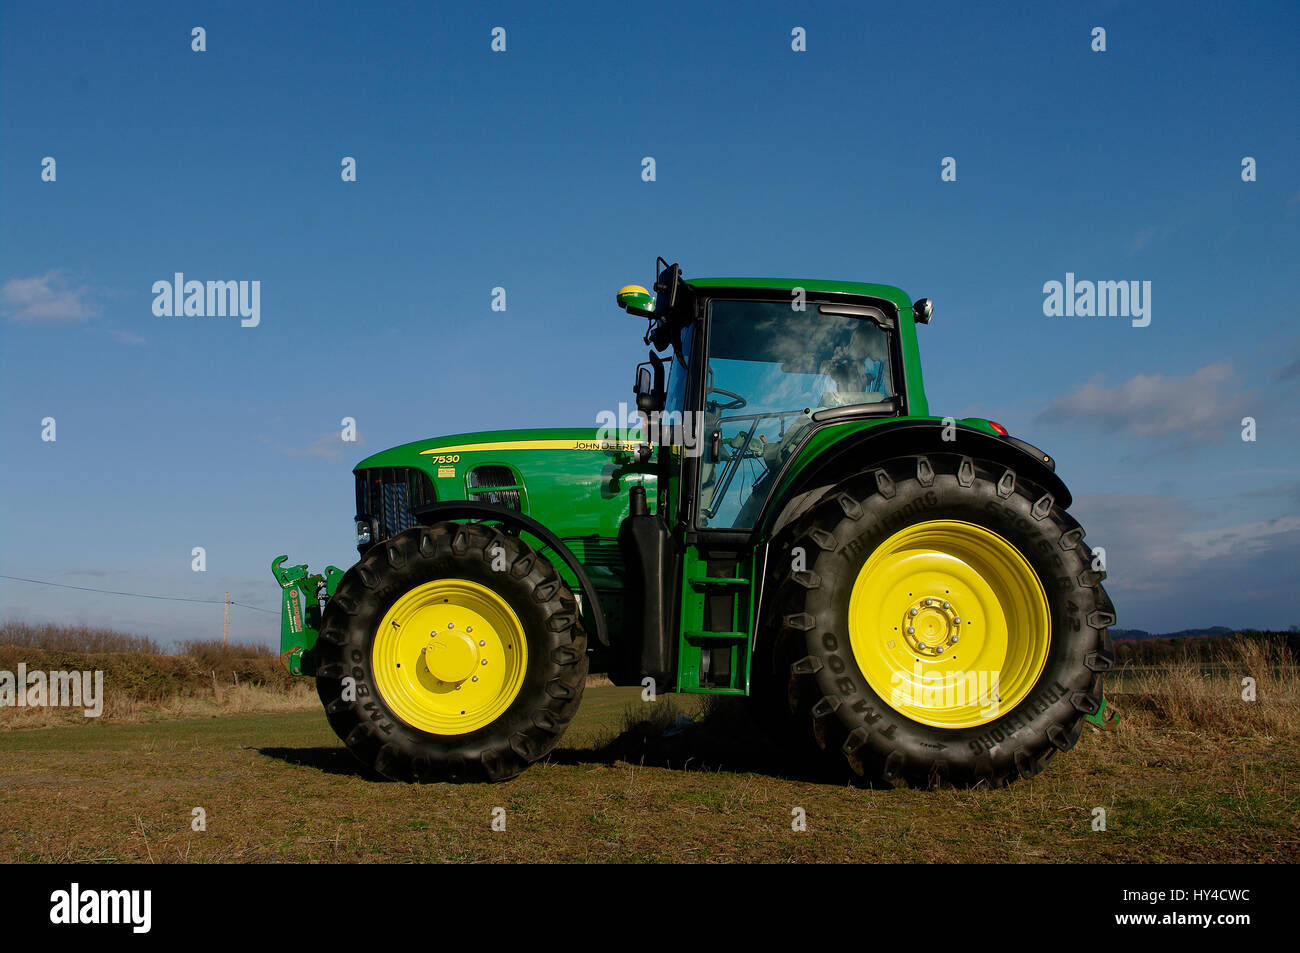 Front tractor weight immagini e fotografie stock ad alta risoluzione - Alamy